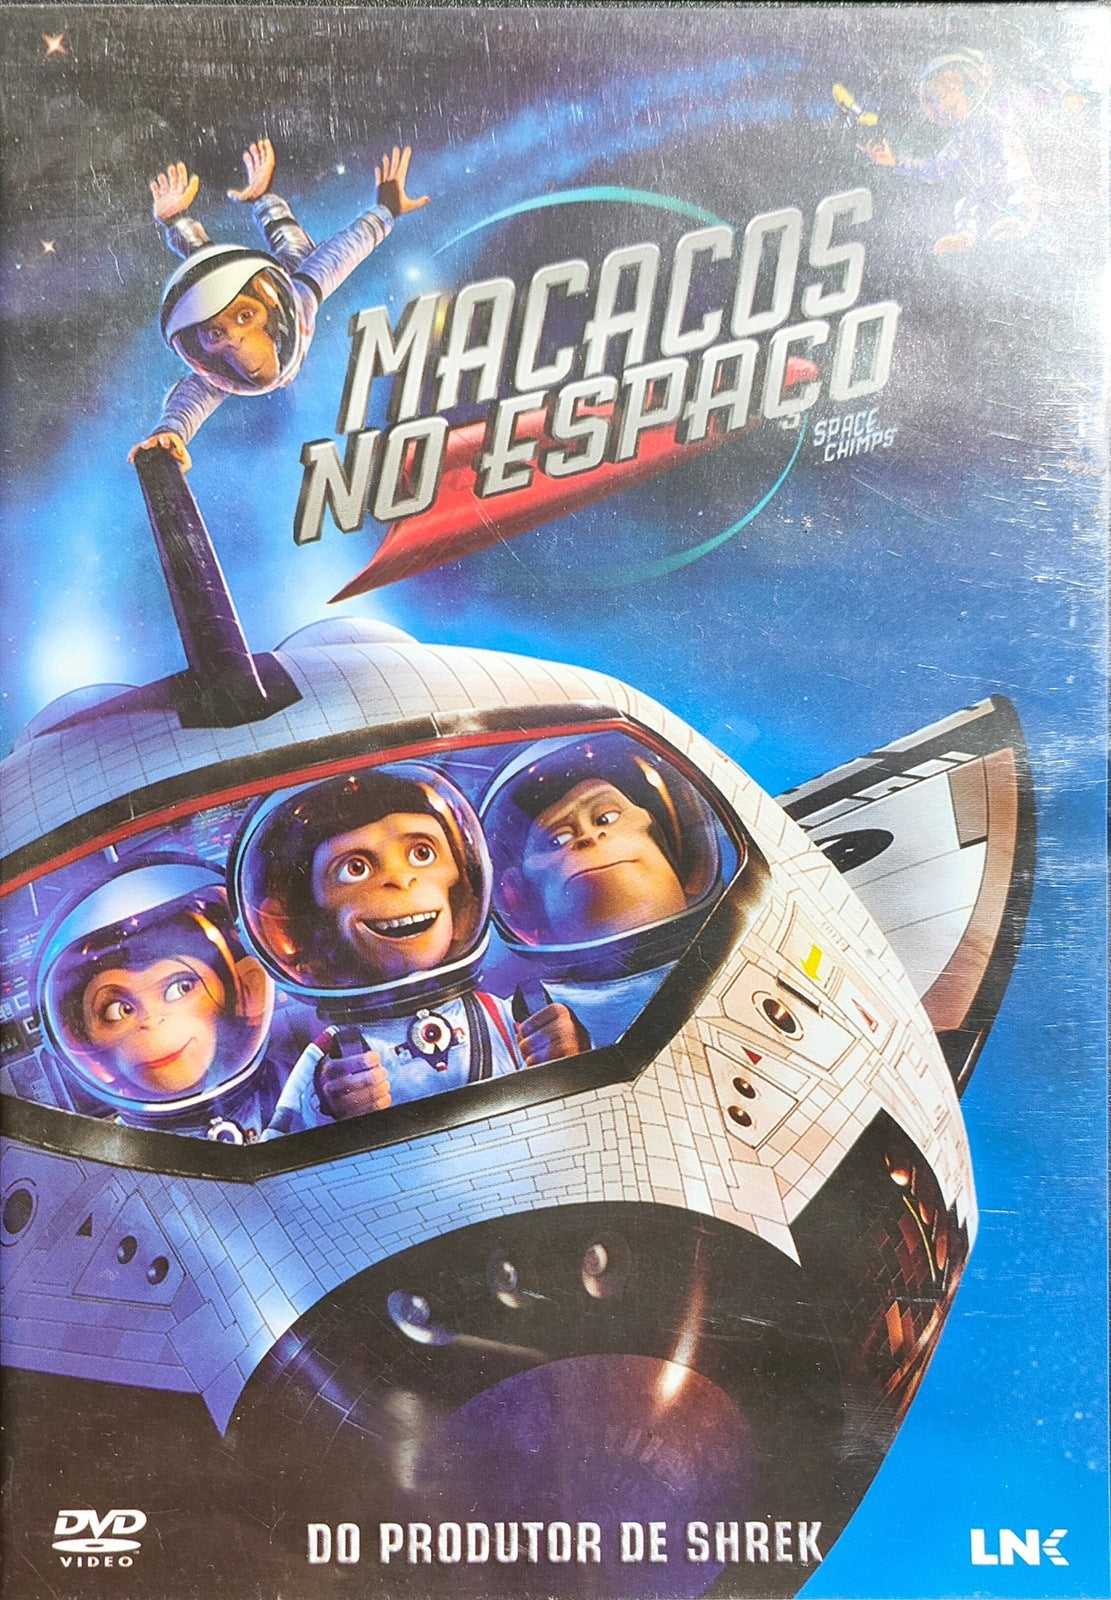 DVD Macacos No Espaço - Usado